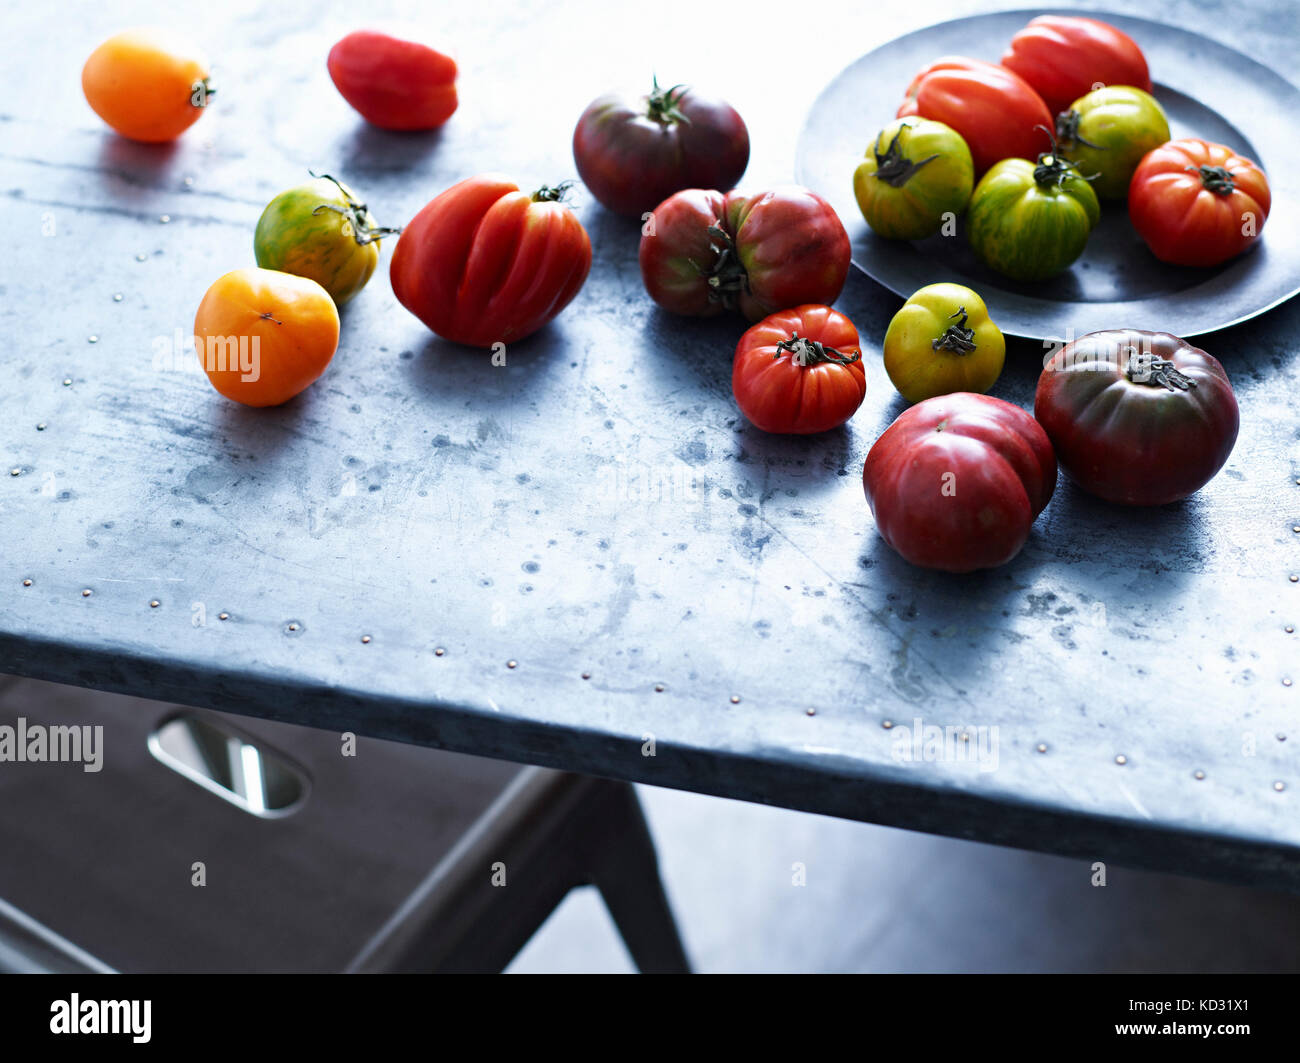 Selezione del cimelio di pomodori sul tavolo, close-up Foto Stock